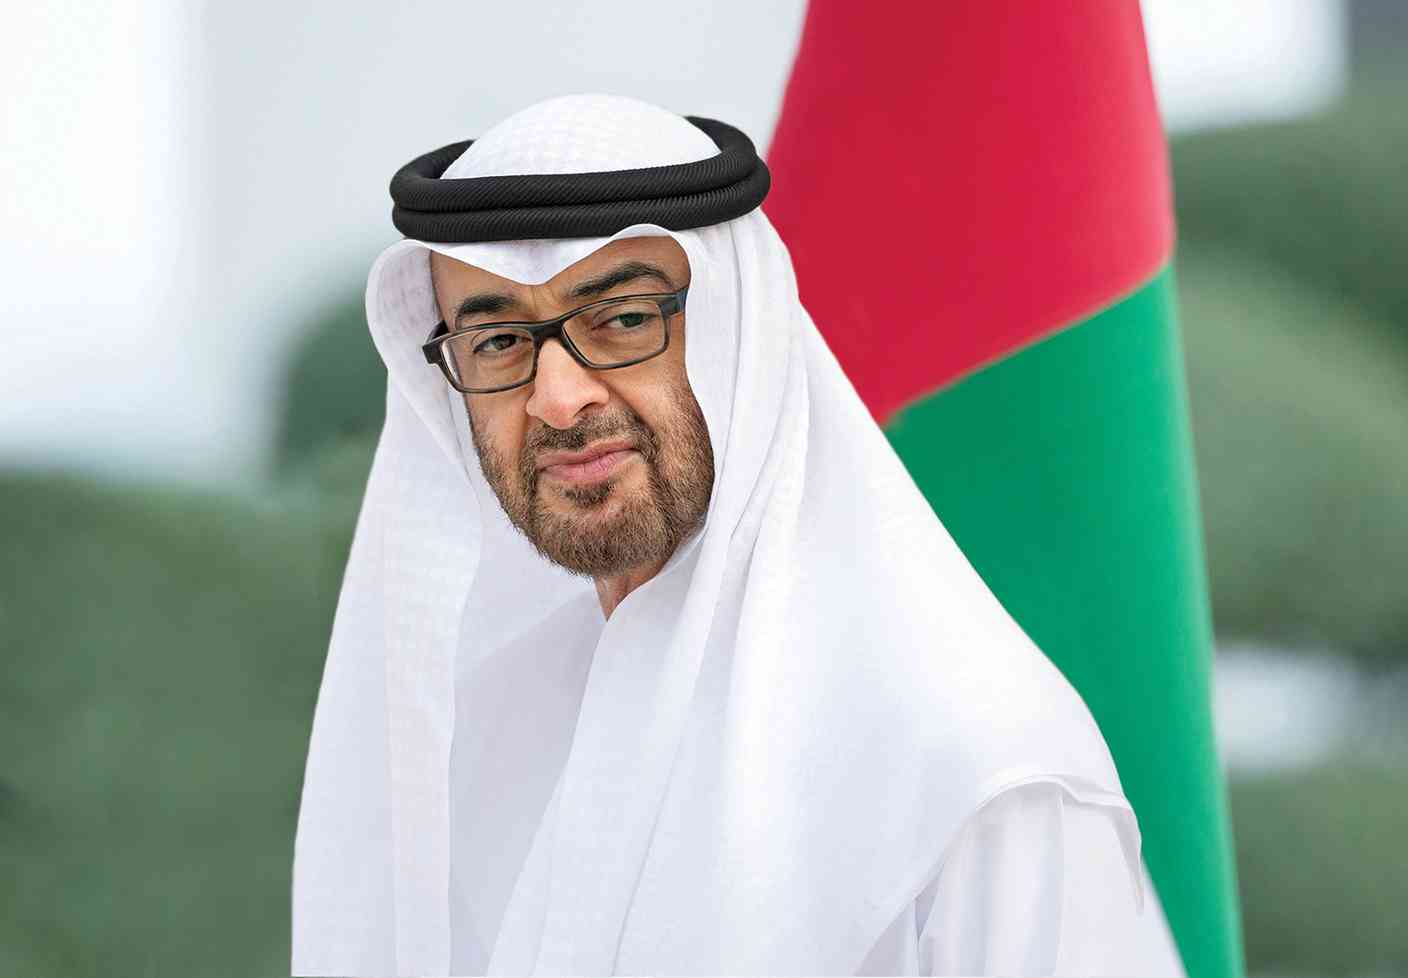 تحت رعاية رئيس الدولة.. "حوار أبوظبي للفضاء" الأول من نوعه عالمياً ينطلق غداً بمشاركة 47 دولة